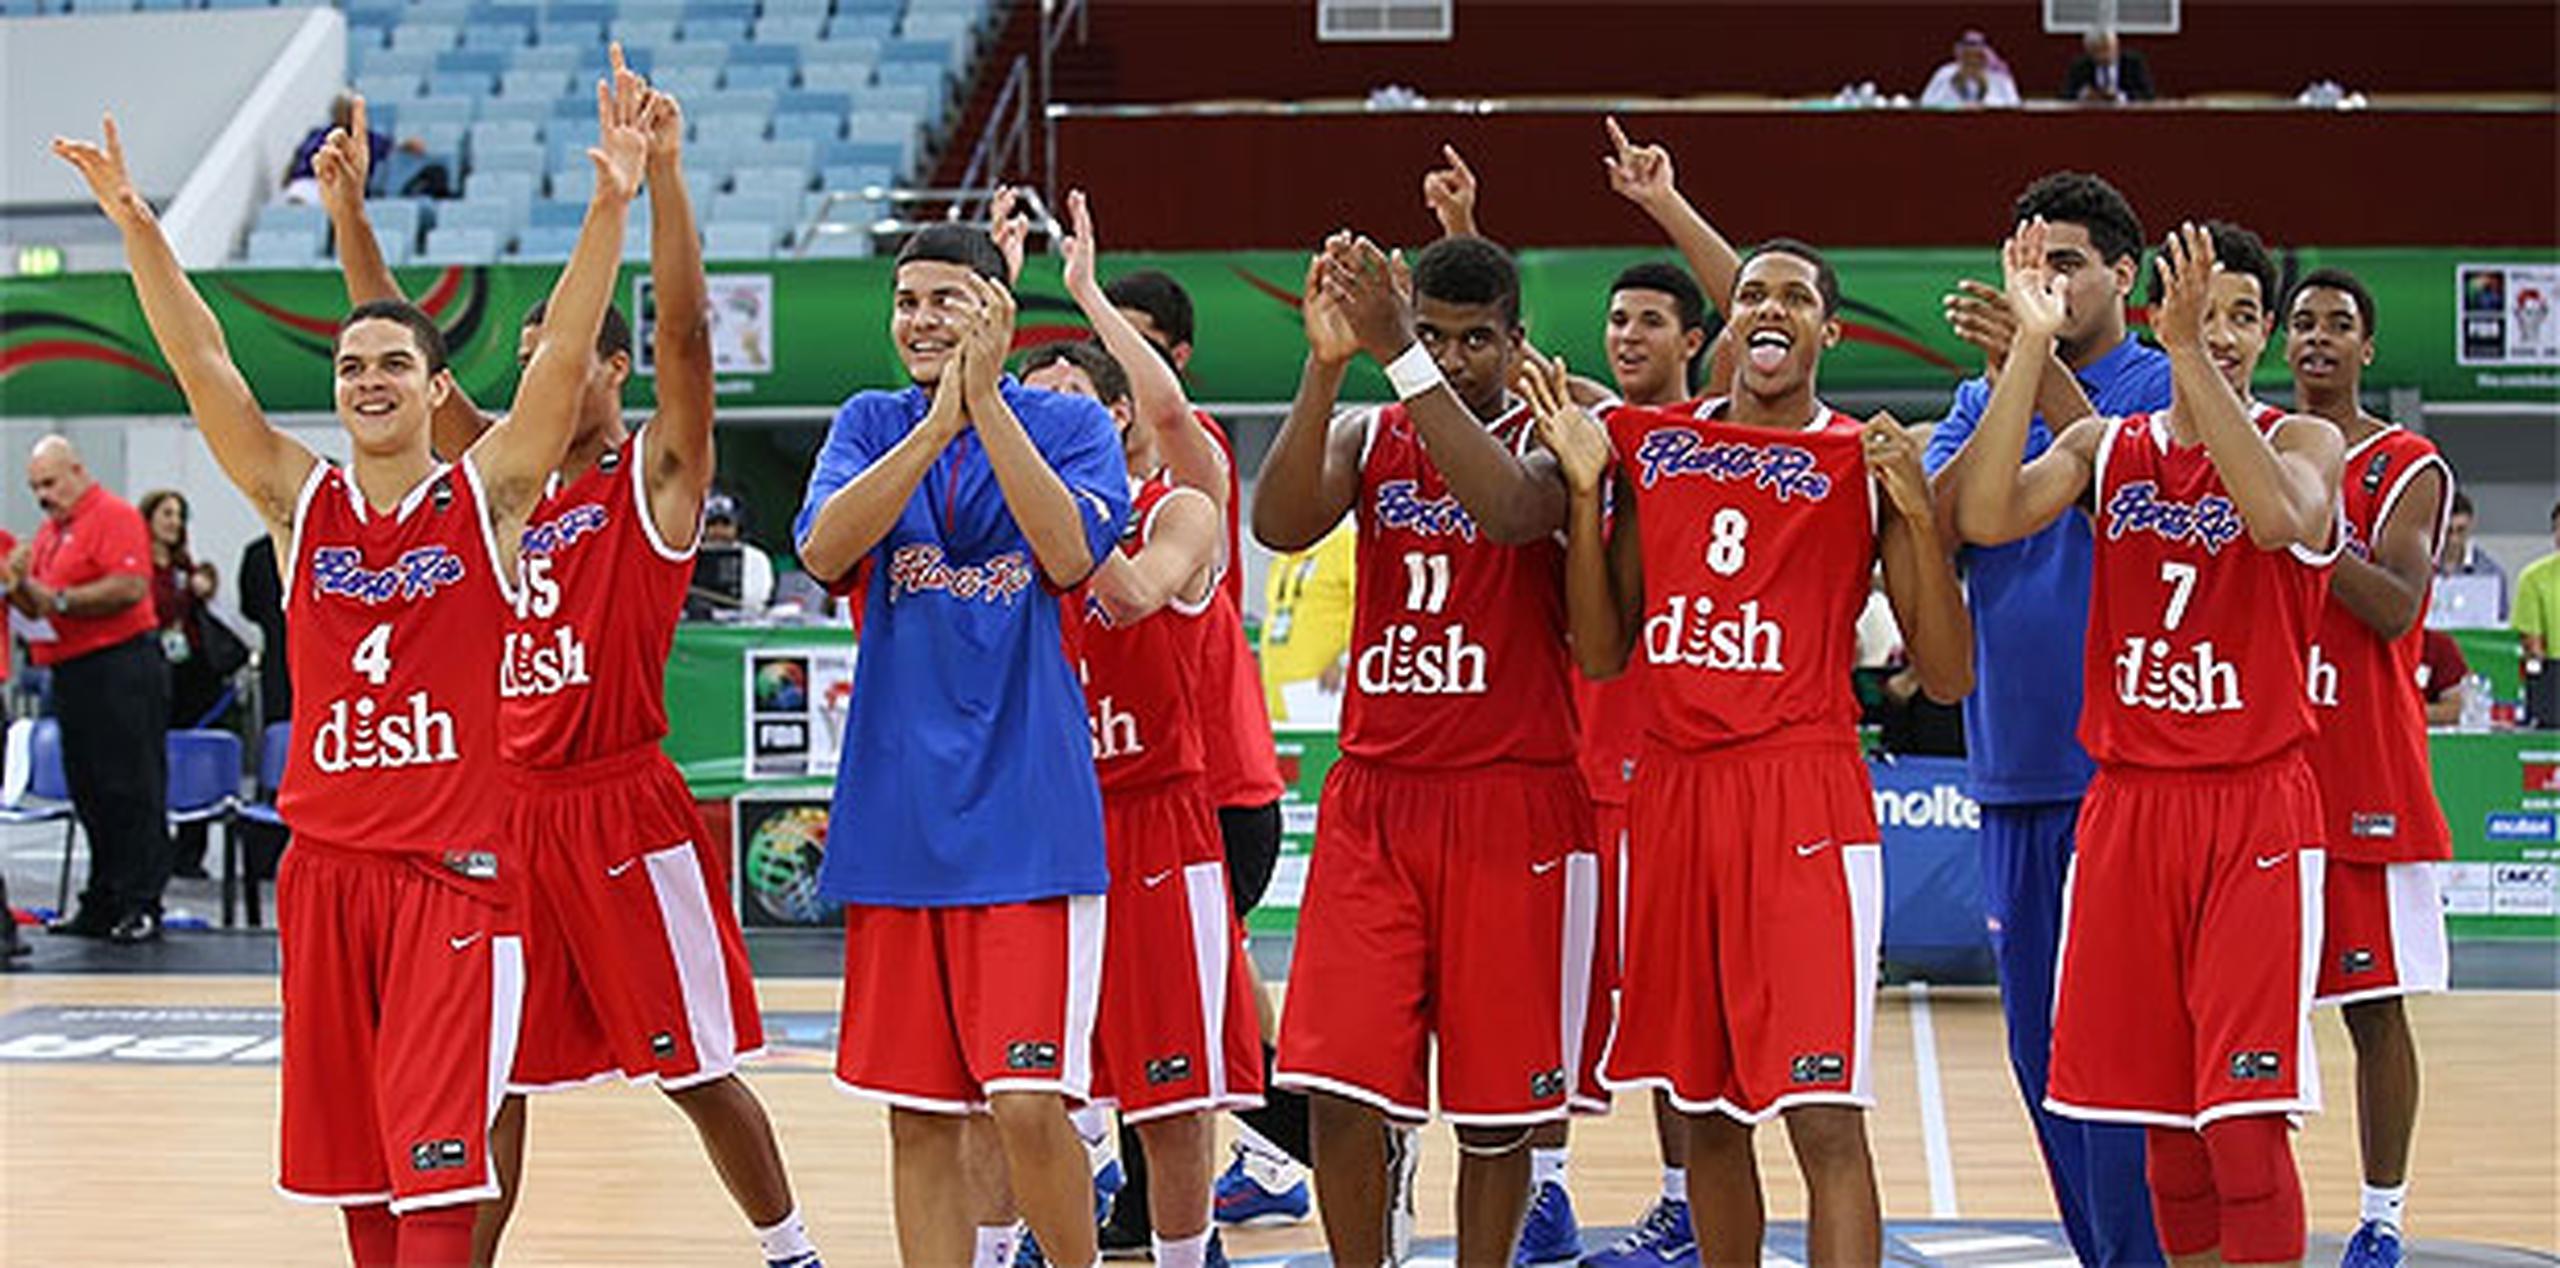 Los jovencitos celebraron con emoción su resultado en el torneo internacional. (FIBA)